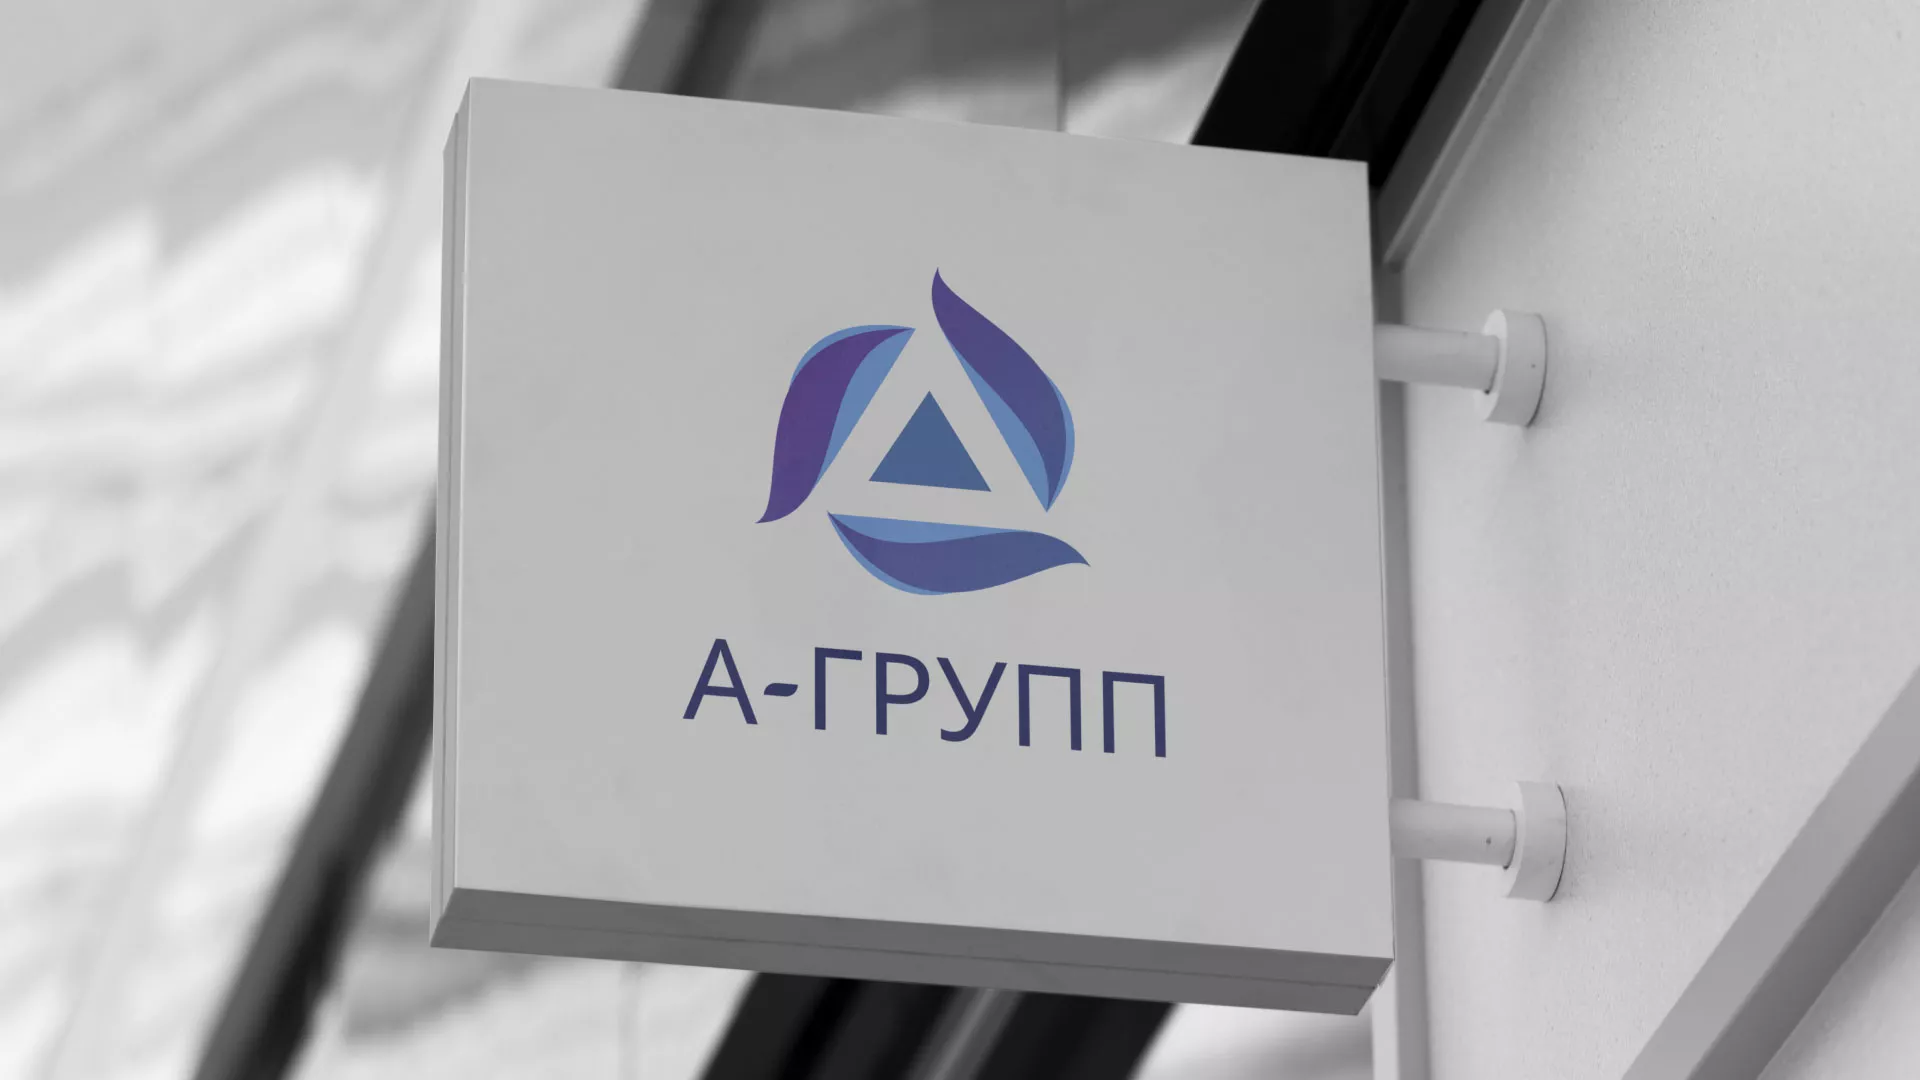 Создание логотипа компании «А-ГРУПП» в Рыбинске